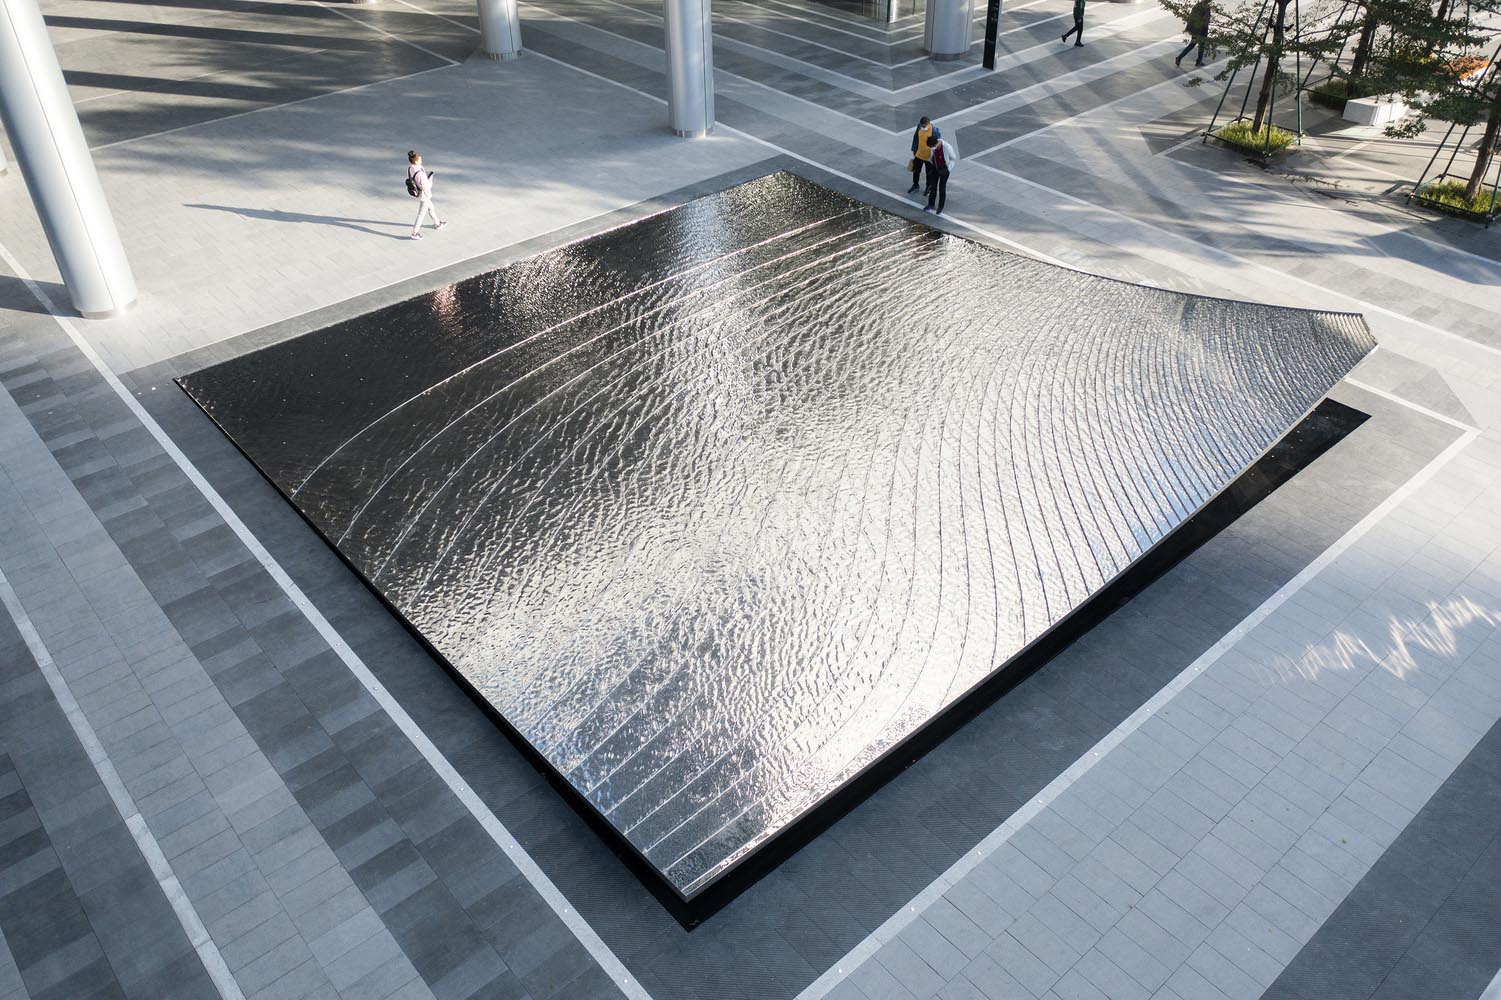 اثر هنری برجسته آب نمای مرکز گوانگژو وانکه طراحی شده توسط شرکت معماری Sushui Design